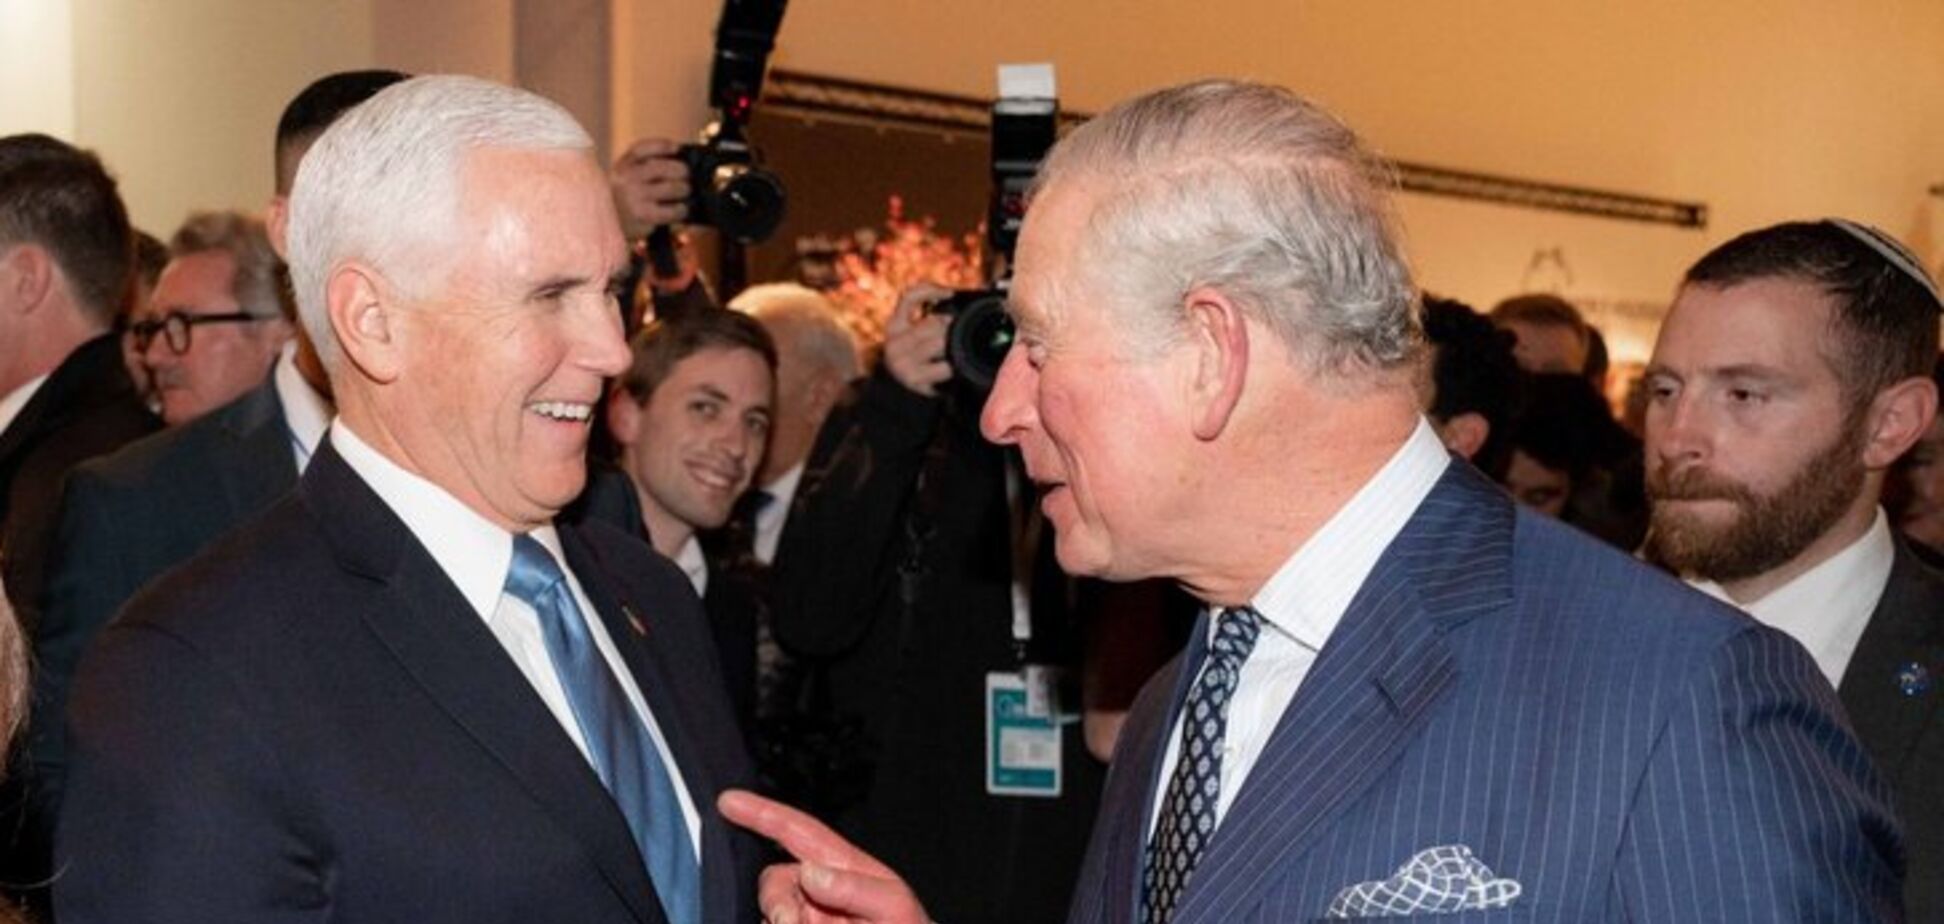 Принц Чарльз отказался пожать руку вице-президенту США. Видео